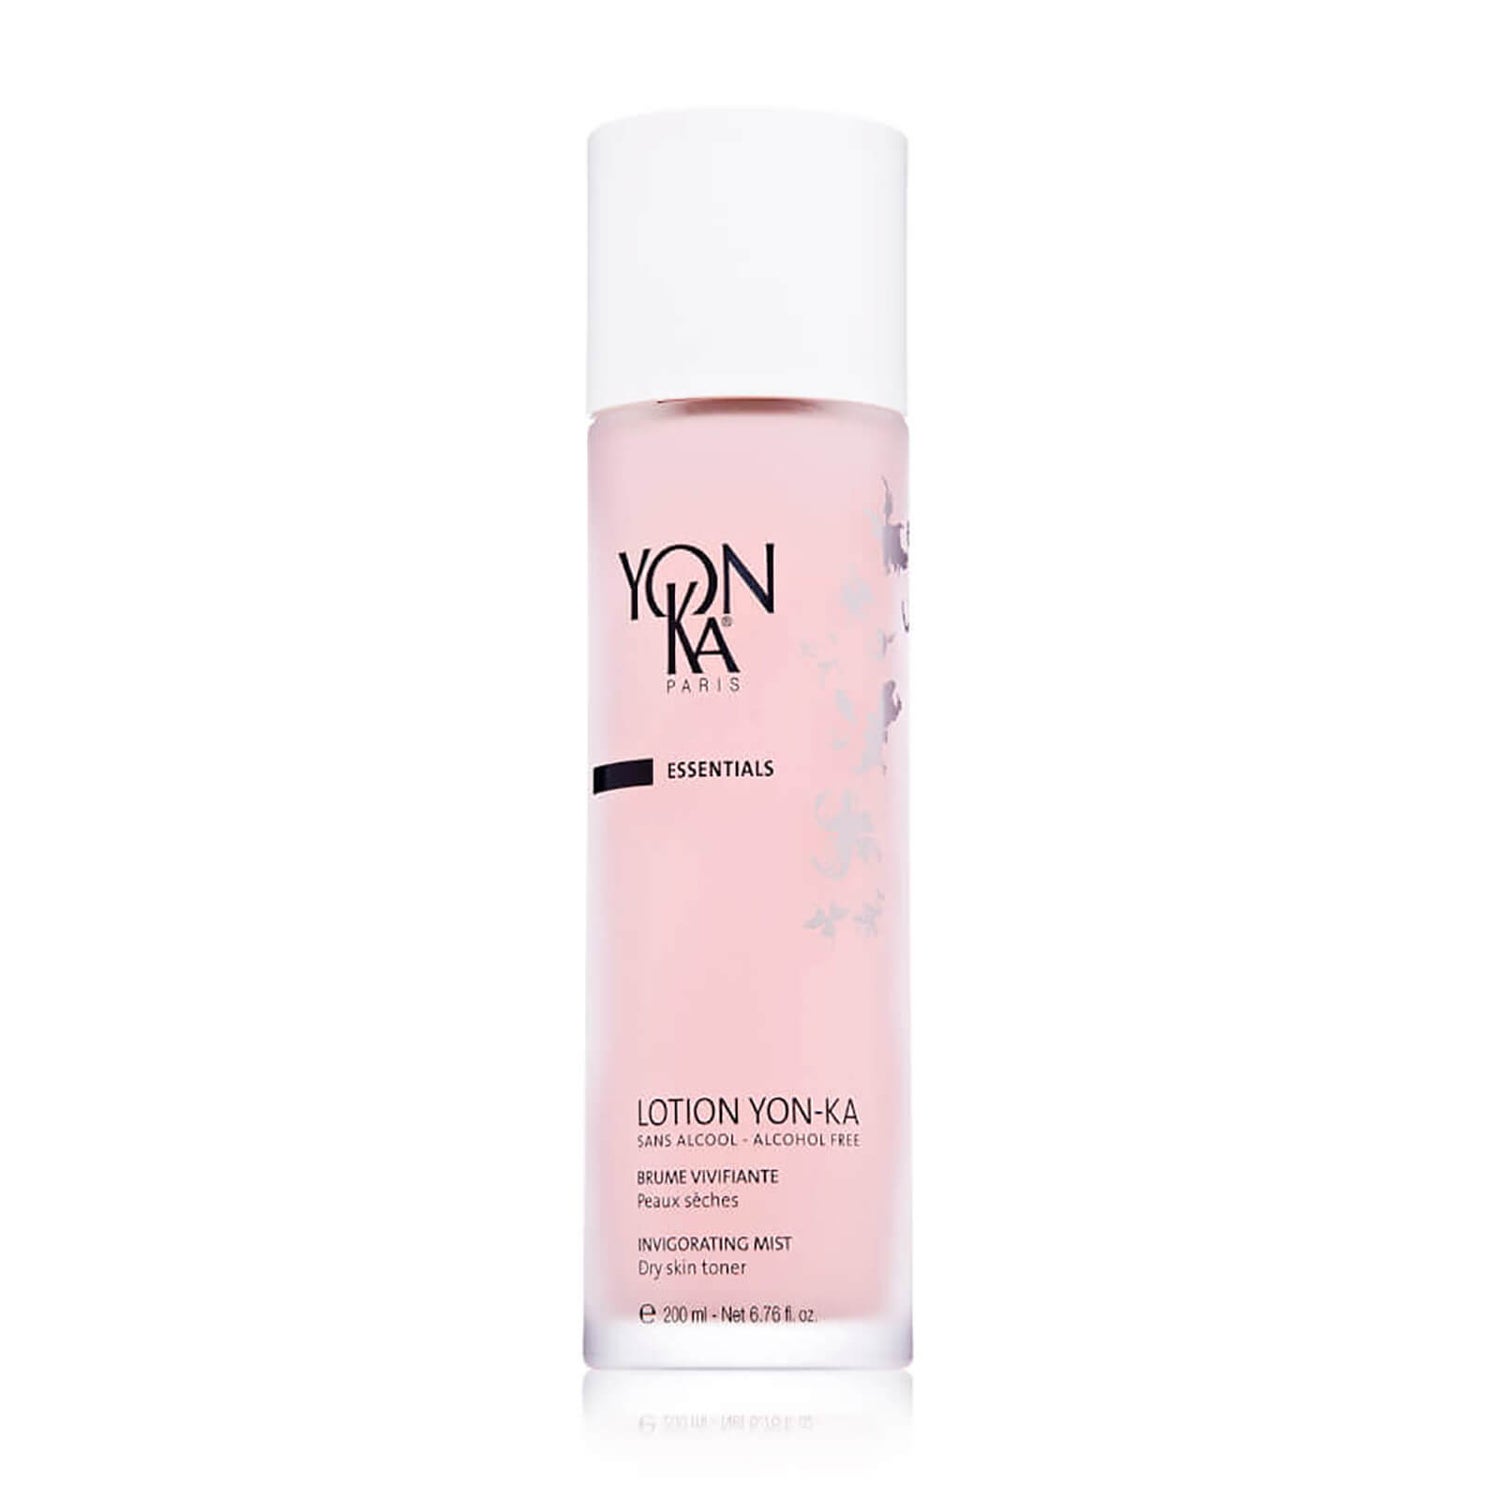 Yon-Ka Paris Skincare Lotion Yon-Ka - Dry Skin Toner (6.76 fl. oz.)